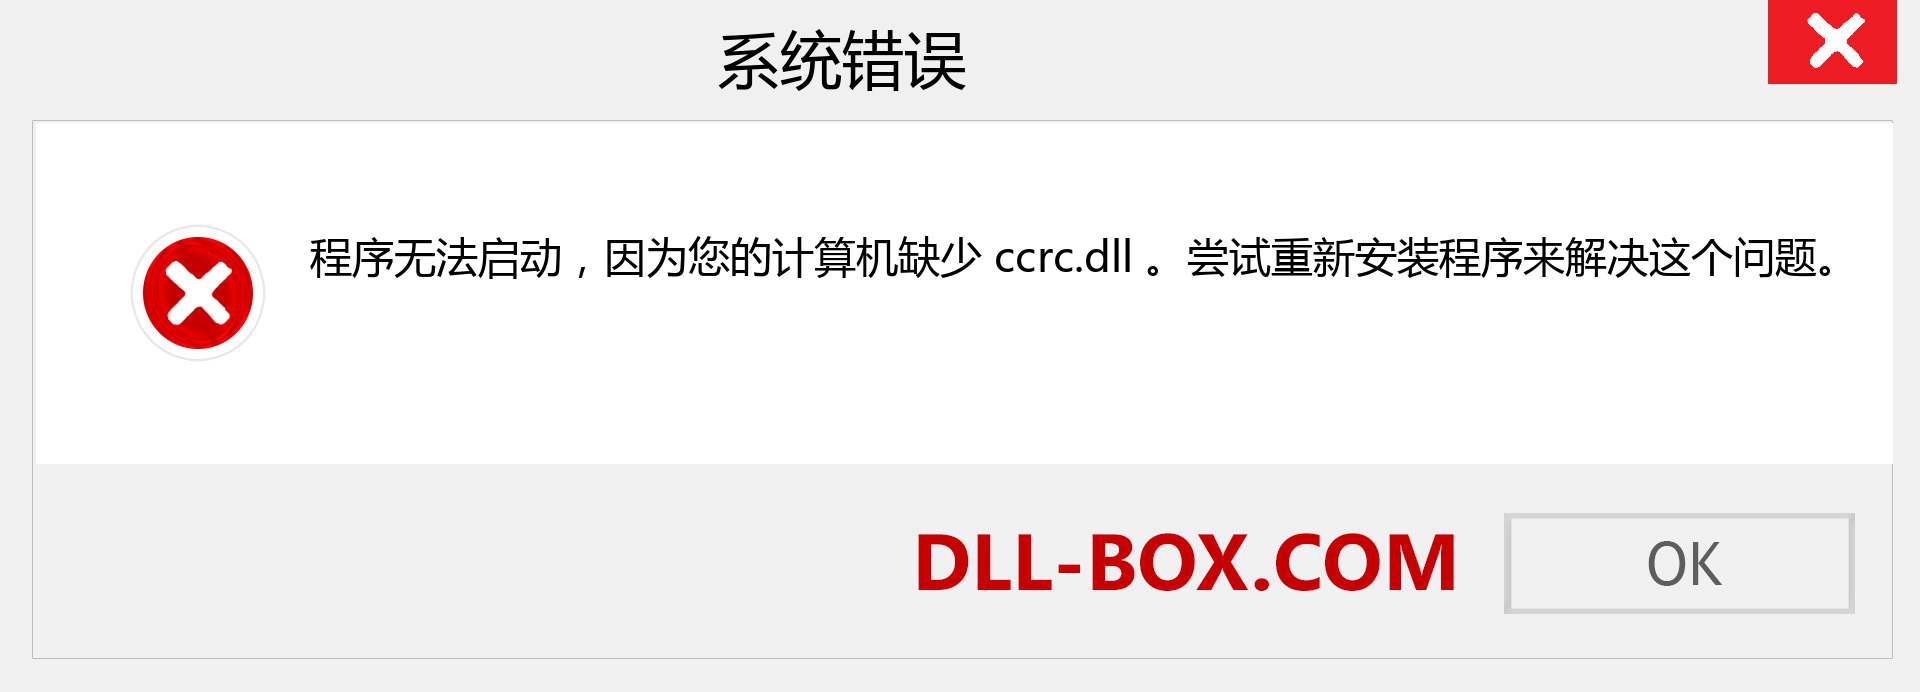 ccrc.dll 文件丢失？。 适用于 Windows 7、8、10 的下载 - 修复 Windows、照片、图像上的 ccrc dll 丢失错误